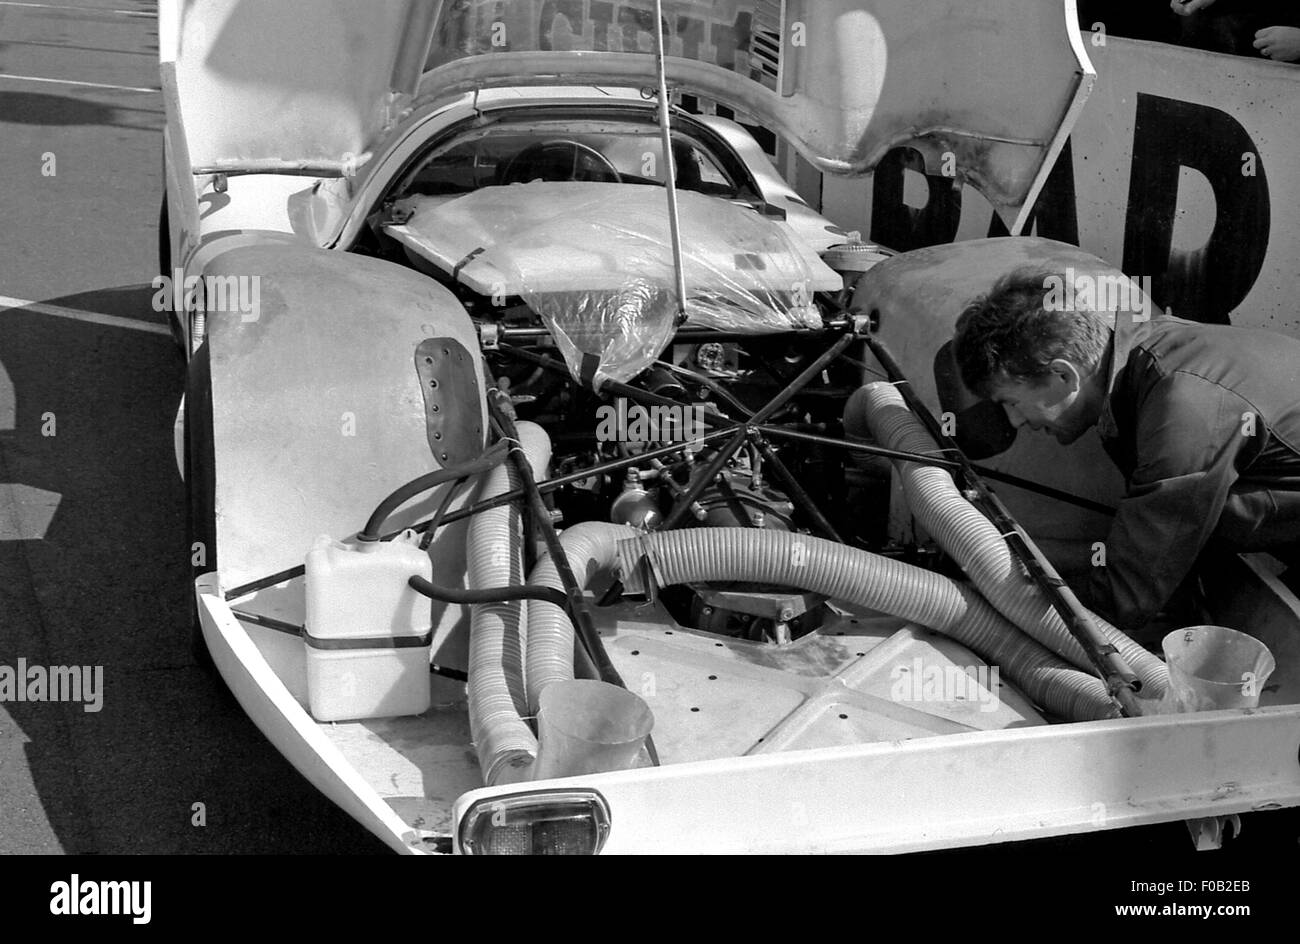 Le Mans 1968 Stock Photo